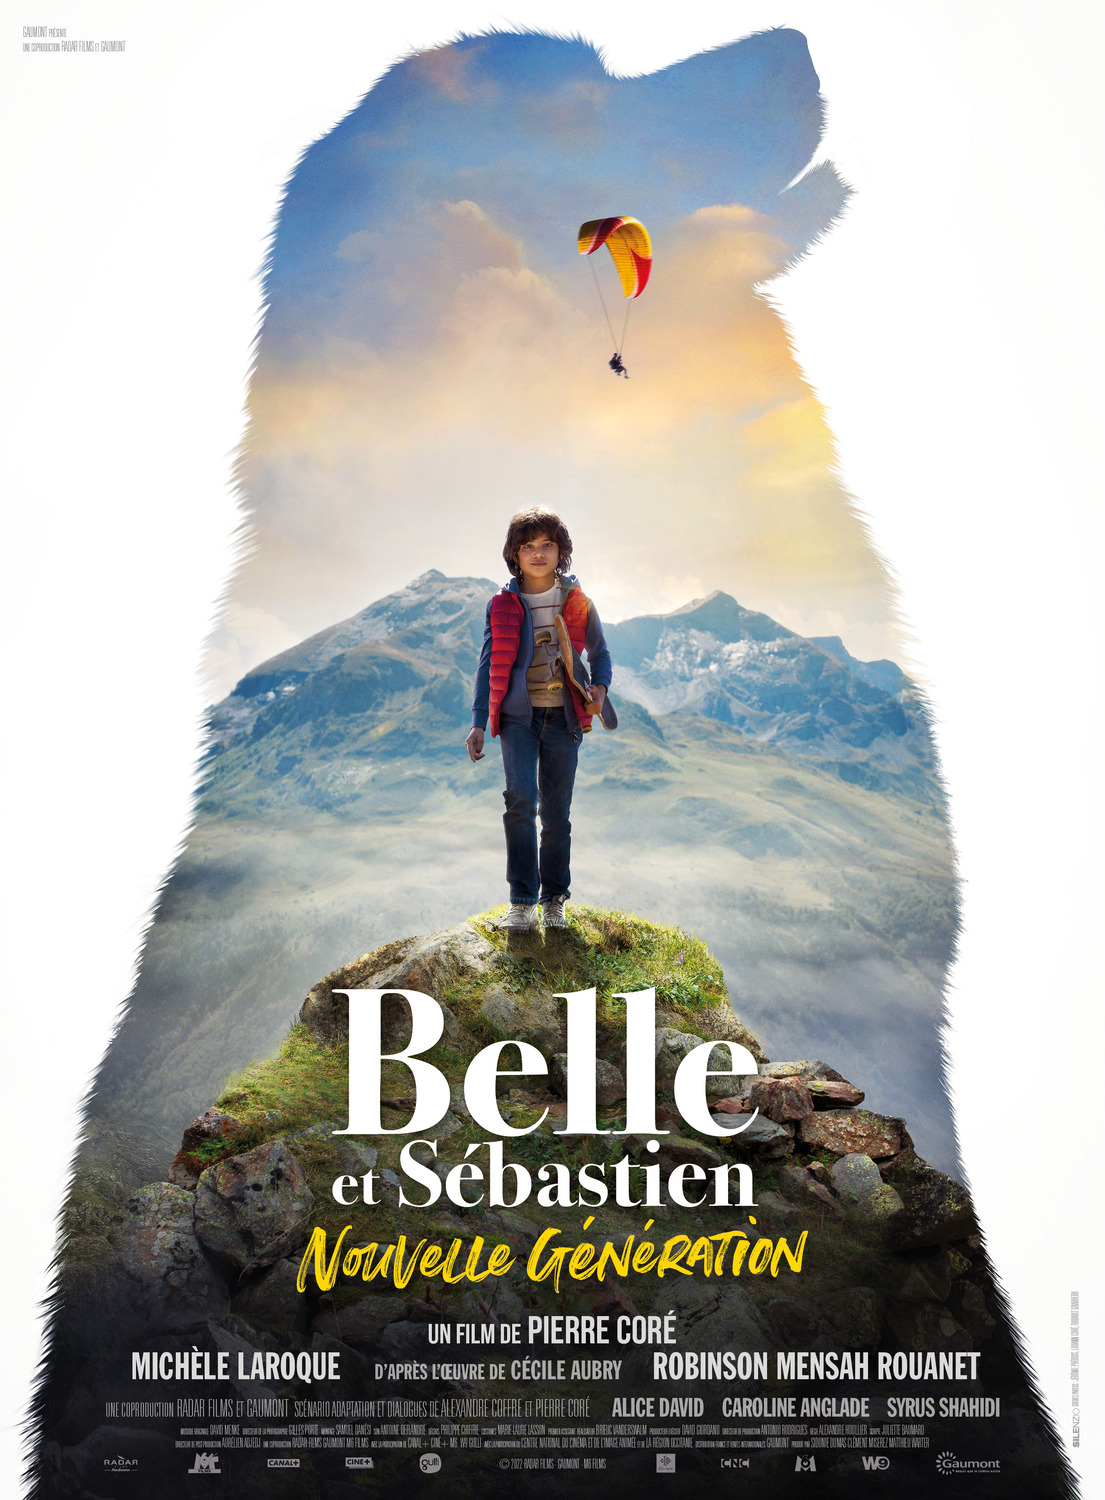 Extra Large Movie Poster Image for Belle et Sébastien: Nouvelle génération 